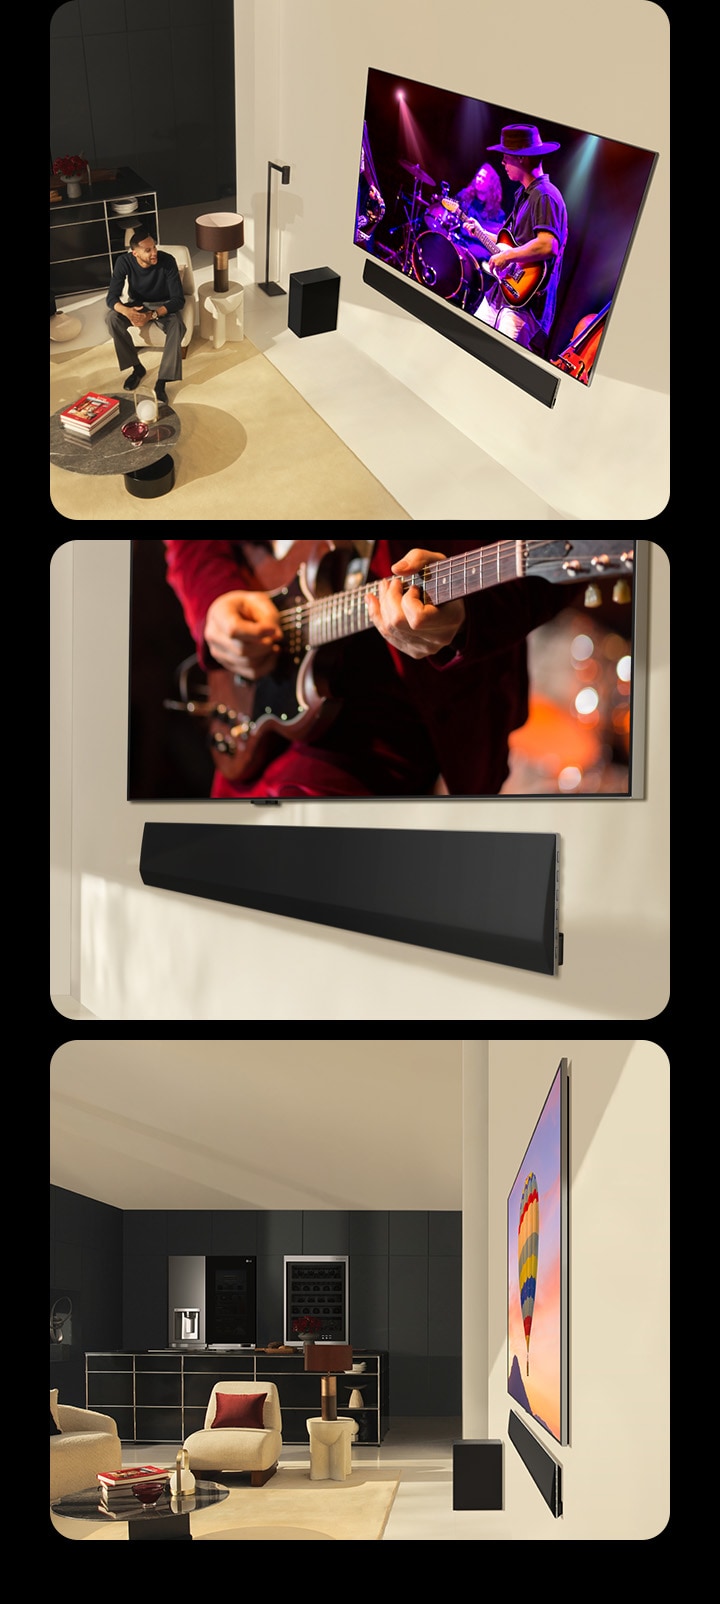 Последовательно показываются три изображения. Сначала пара смотрит концерт на LG OLED evo G4 с идеально подходящей к нему звуковой панелью LG Soundbar SG10TY в современном жилом пространстве, а аналогичное изображение с мужчиной, смотрящим телевизор, показано на мобильном устройстве. Ниже на одном показан угловой вид снизу на телевизор LG OLED TV и звуковую панель LG Soundbar. А на другом показан вид в боковом ракурсе на телевизор LG OLED evo G4 и звуковую панель LG Soundbar SG10TY, имеющие невероятно тонкие размеры и практически не отделяющиеся от стены. 